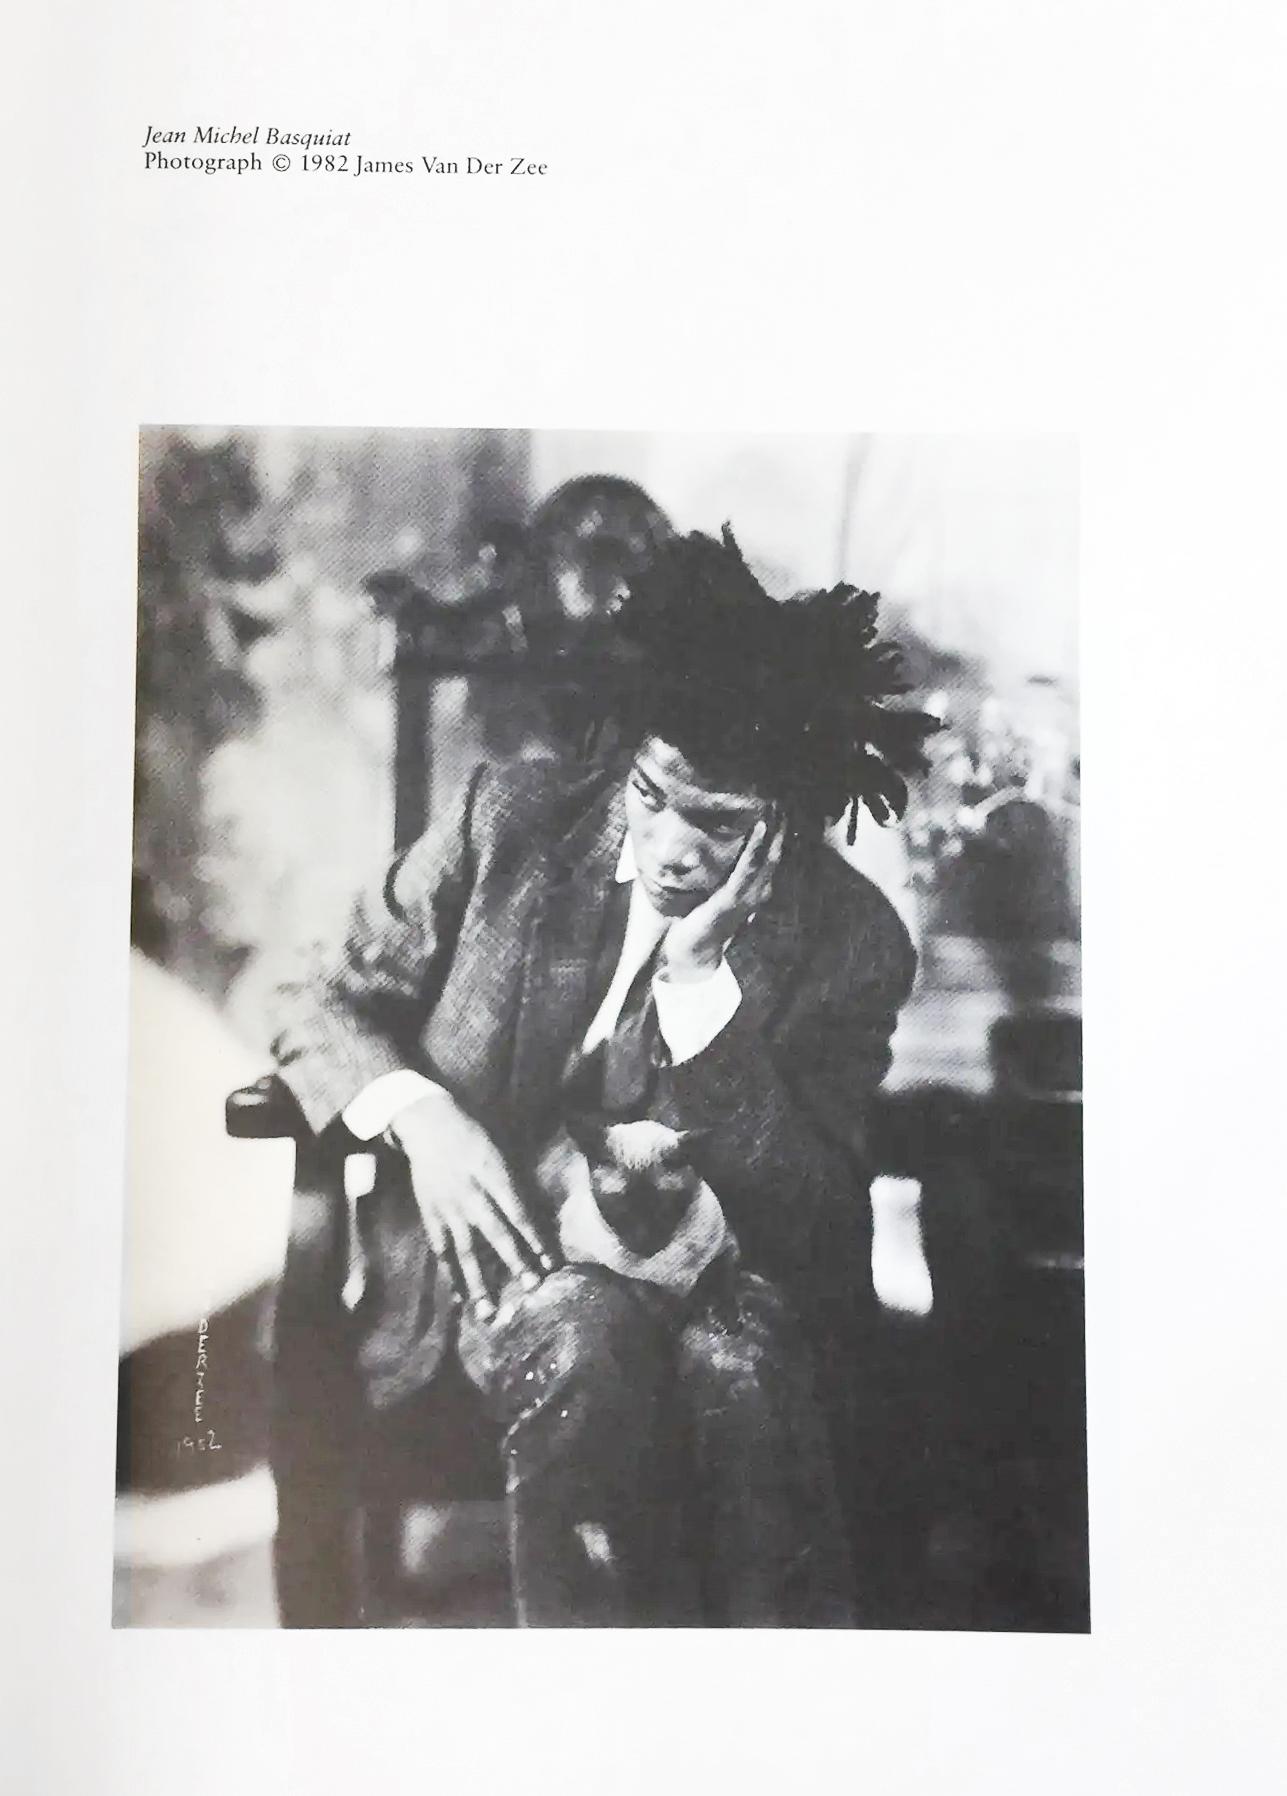 Peintures de Jean-Michel Basquiat 1981-1984 :
Rare catalogue d'exposition de Basquiat de 1984, très recherché, publié par la Fruitmarket Gallery d'Edimbourg, en Ecosse. Intitulée : 